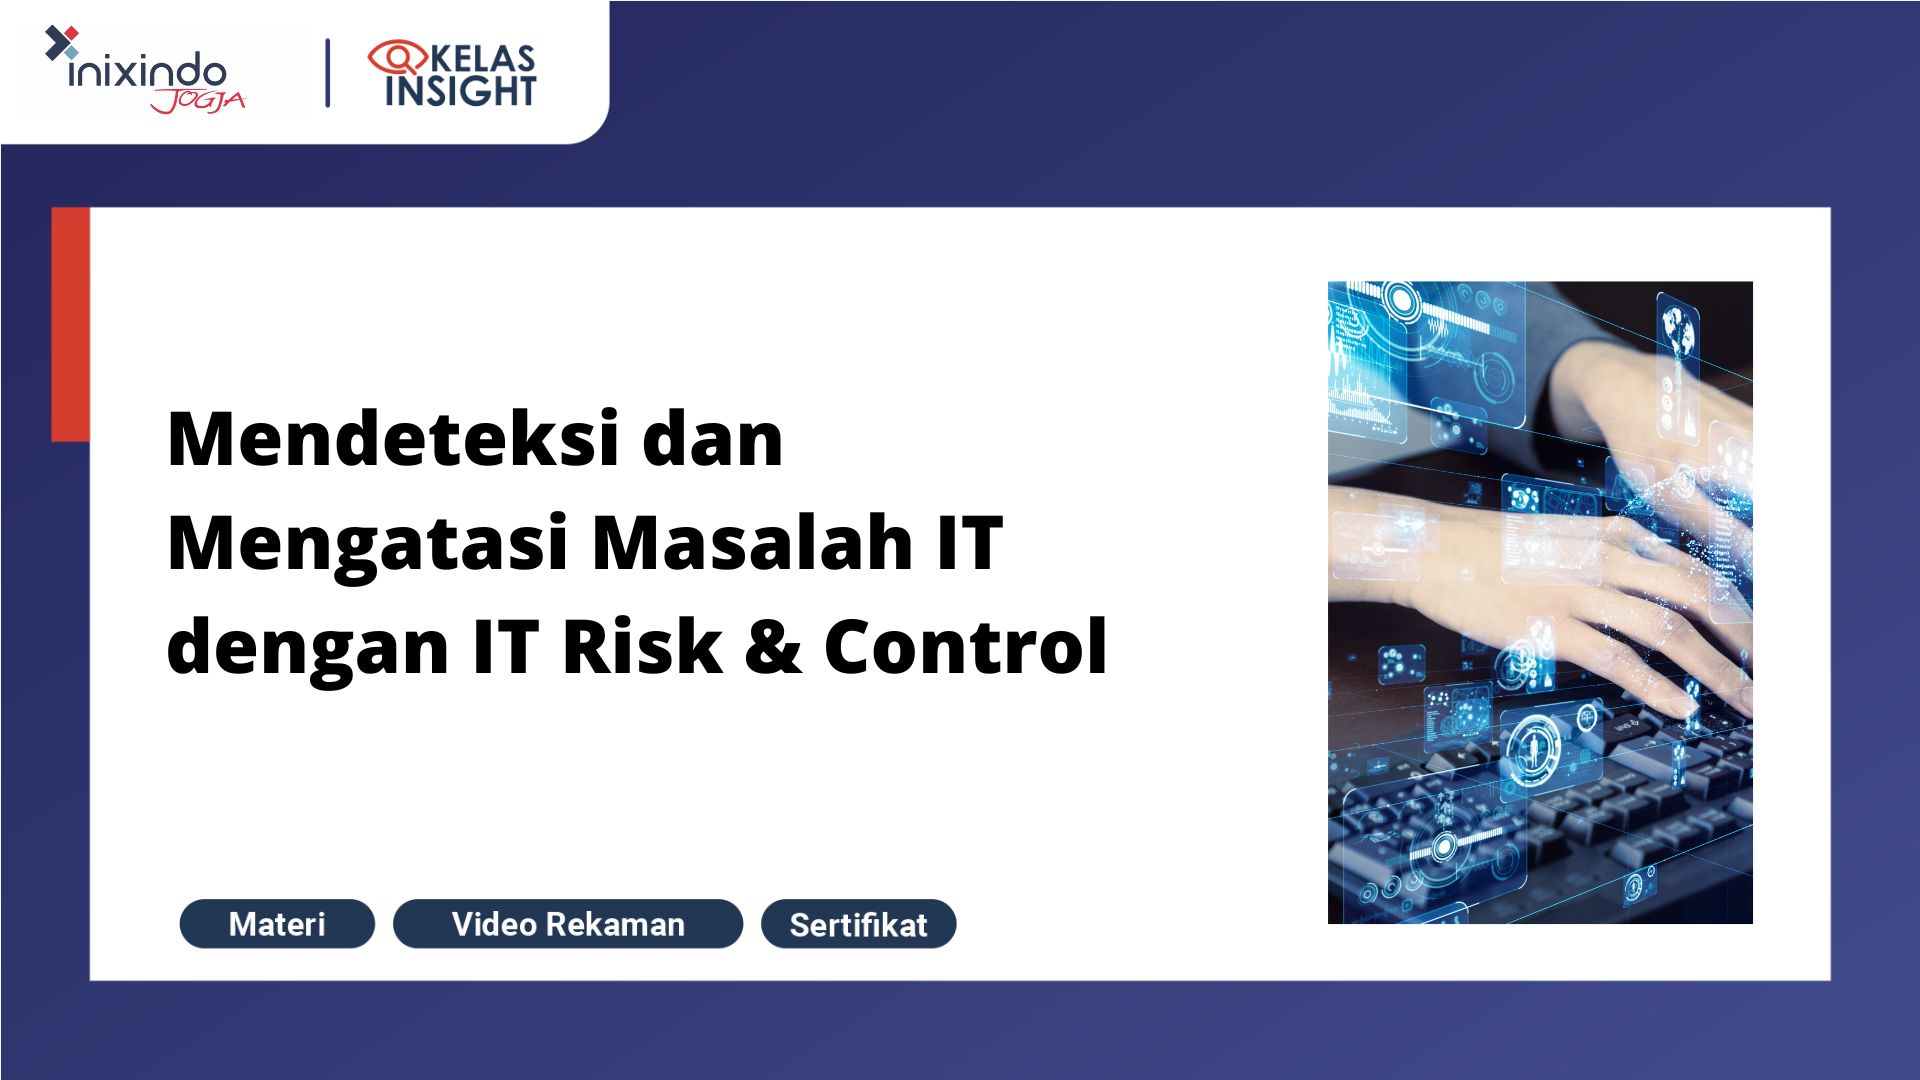 Webinar Mendeteksi dan Mengatasi Masalah IT dengan IT Risk & Control 1